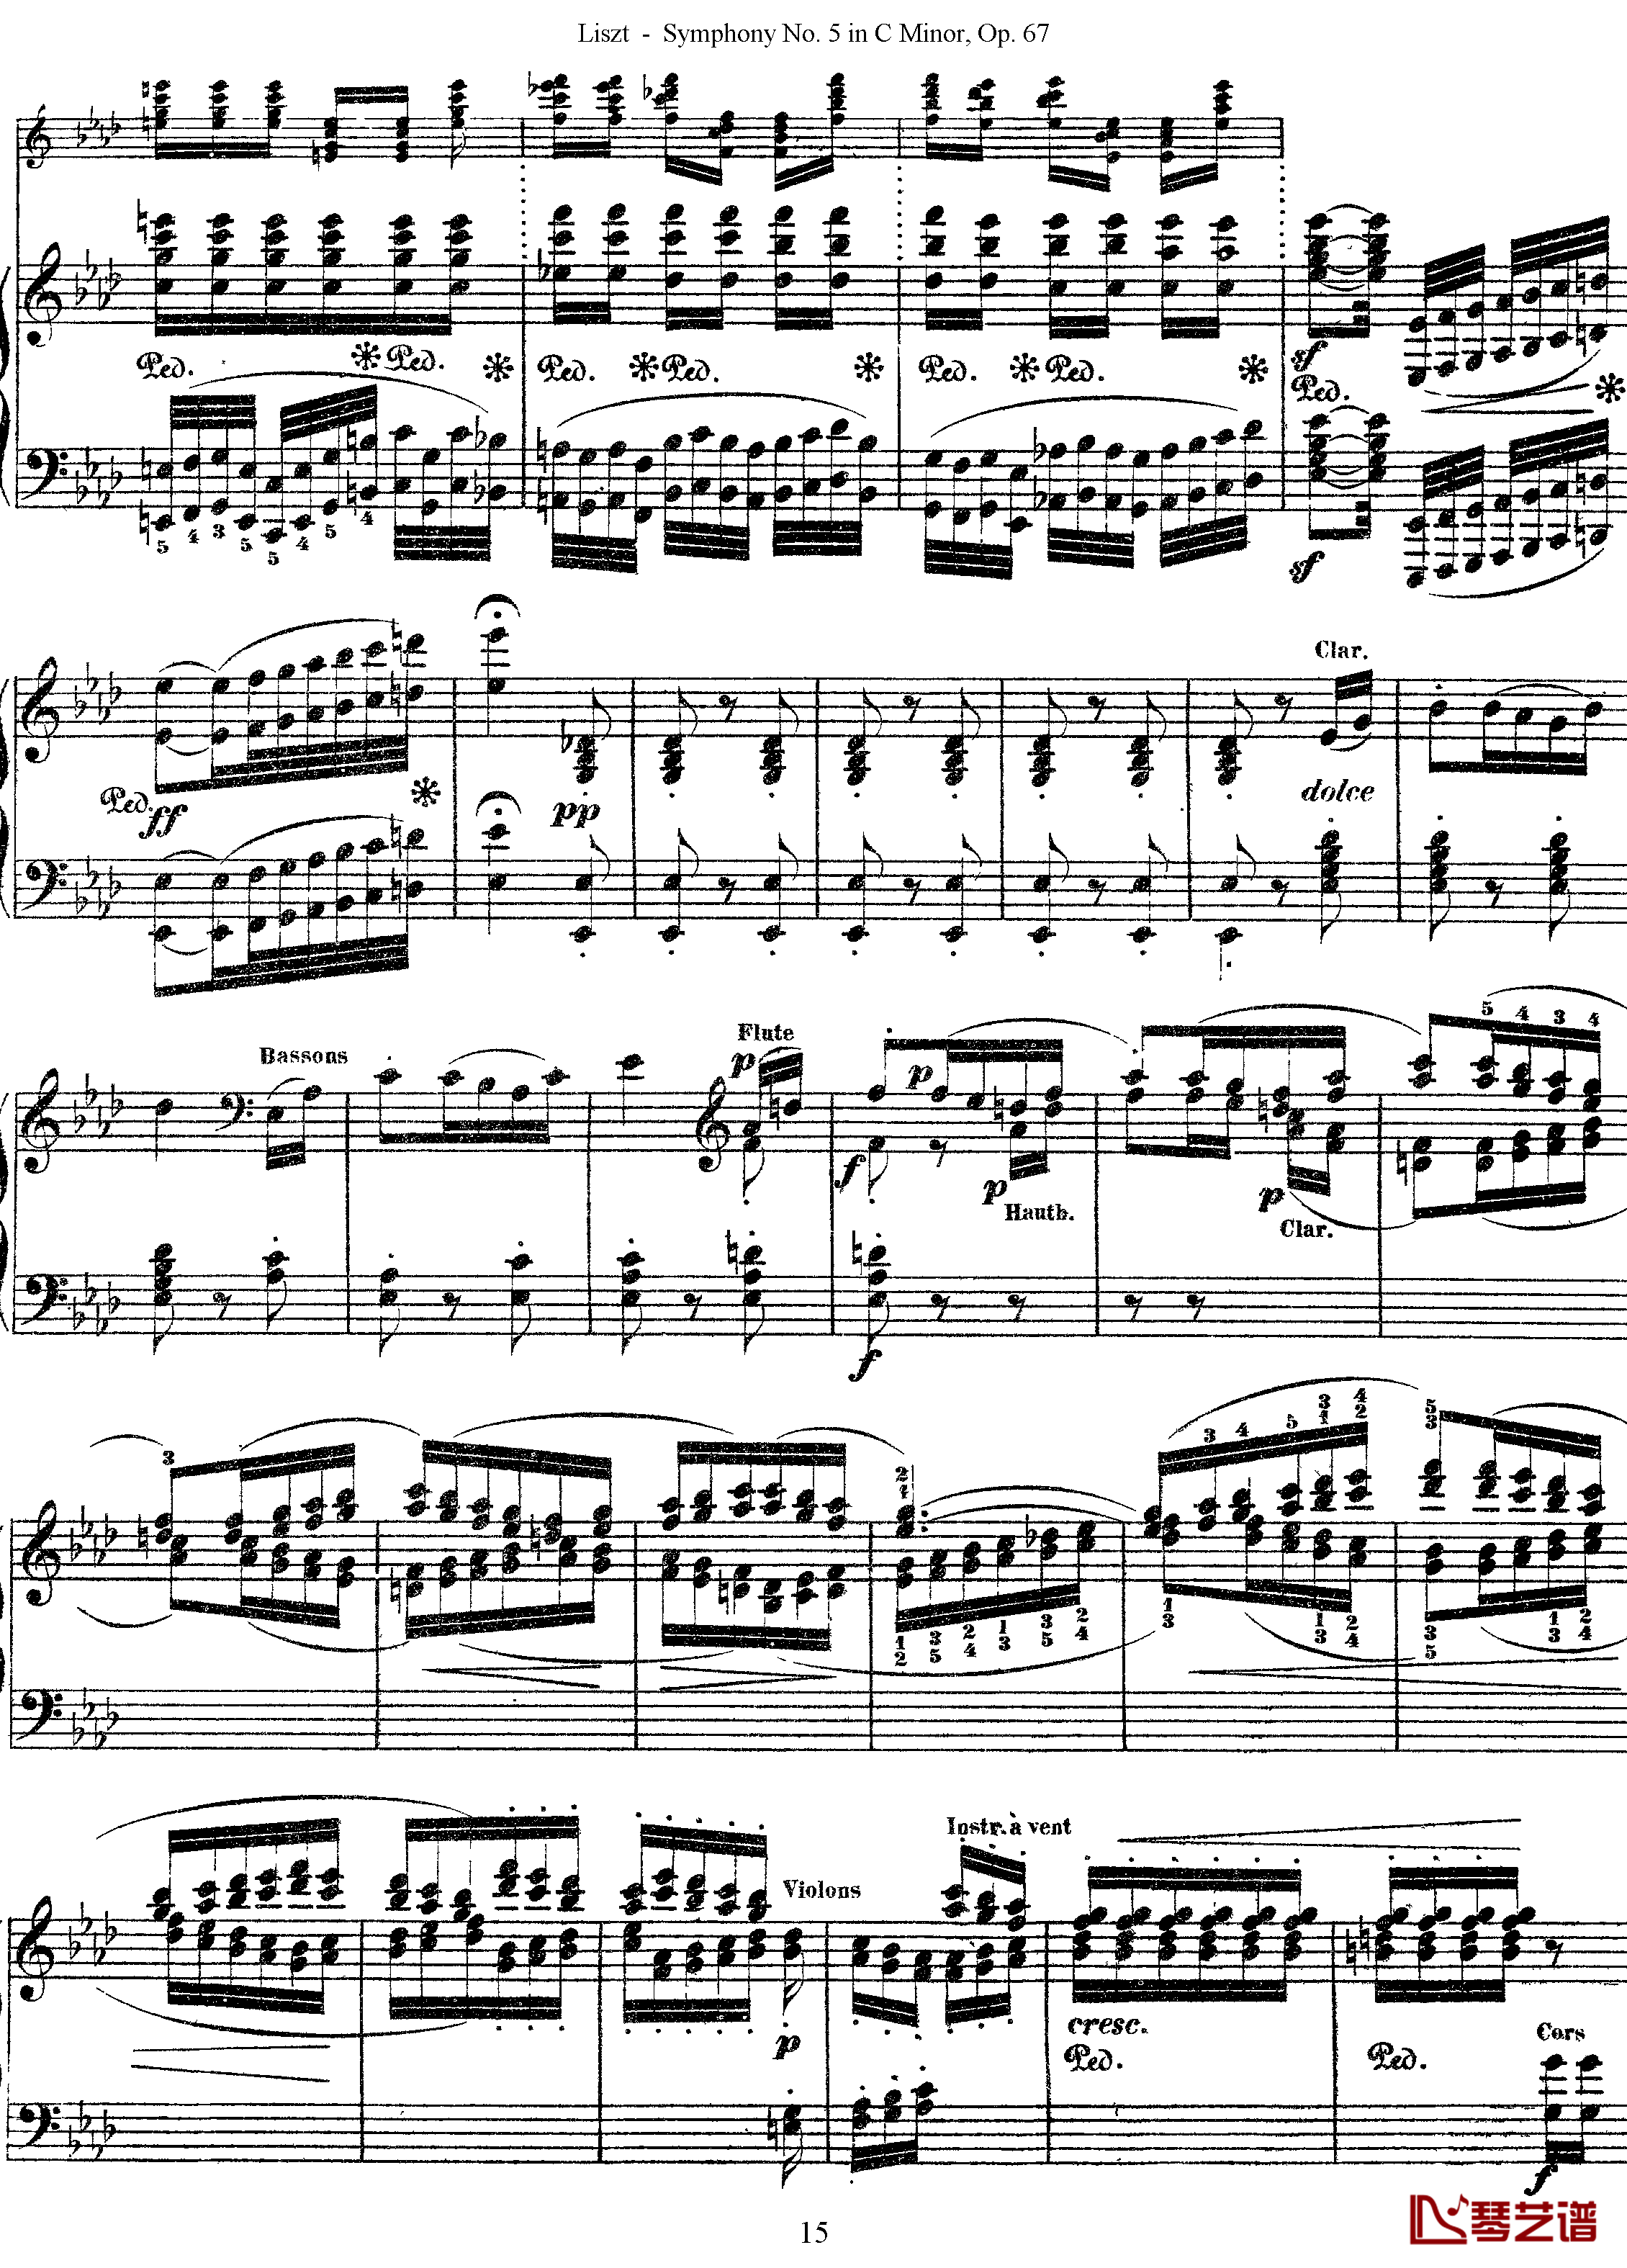 第五交响乐的钢琴曲钢琴谱-李斯特-李斯特改编自贝多芬15